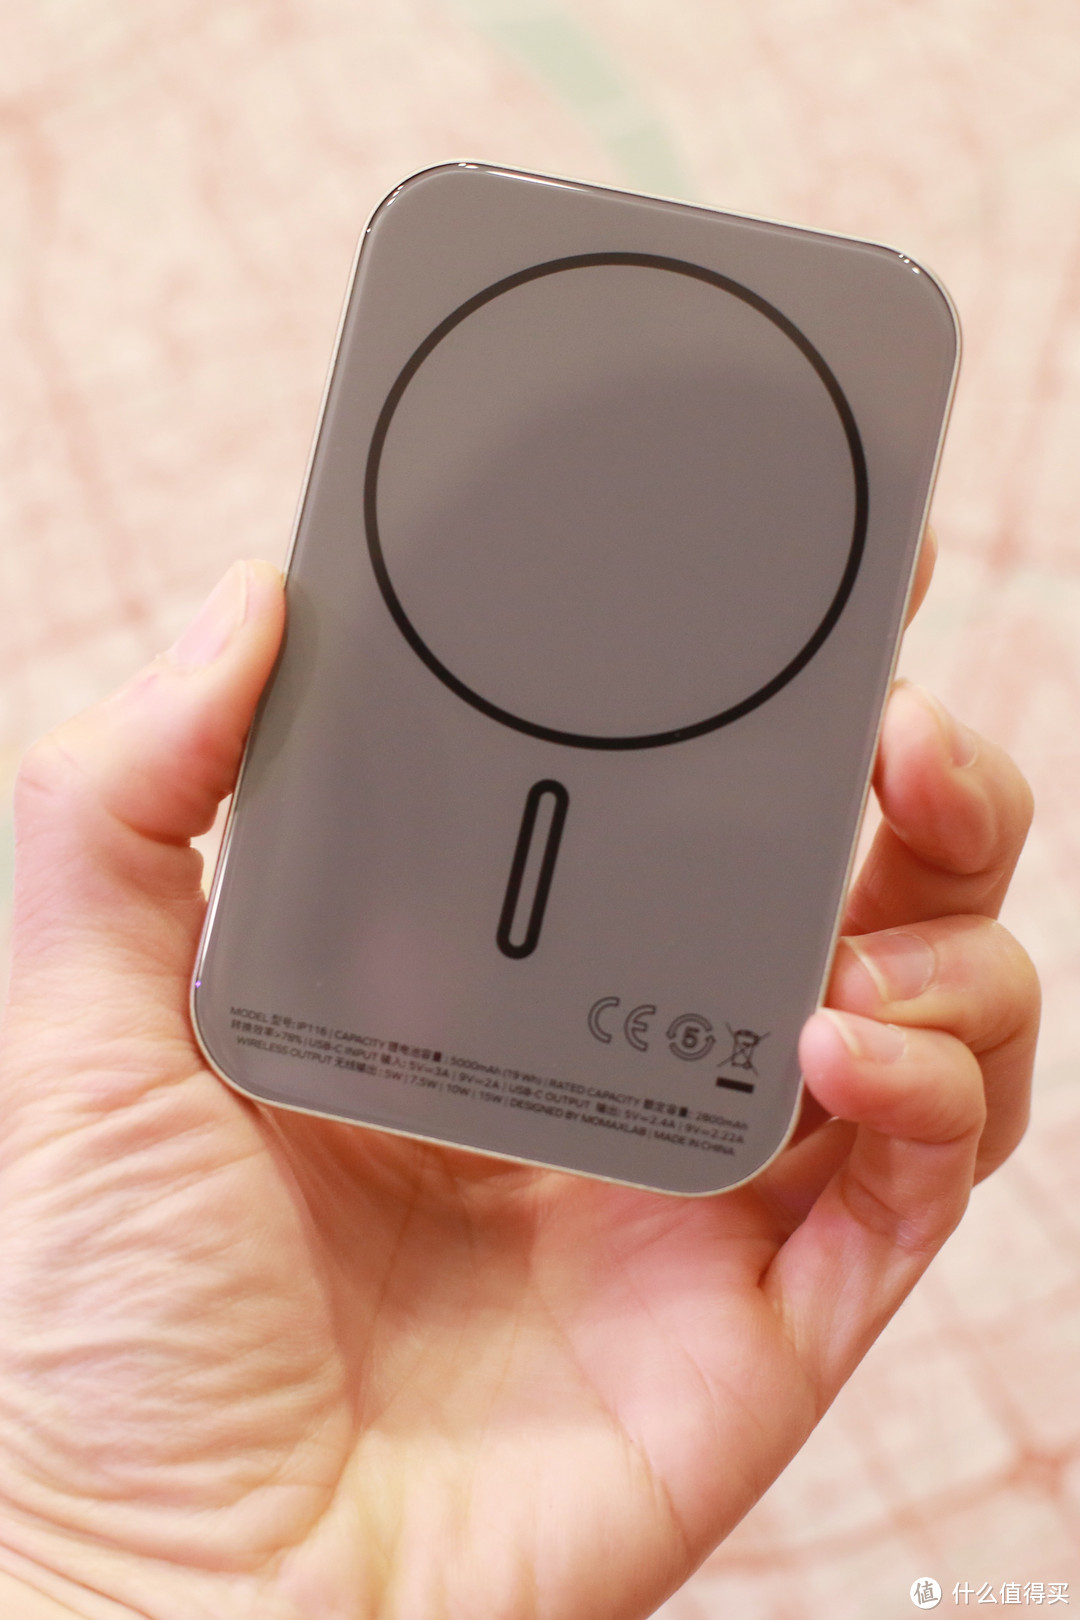 摩米士磁吸支架手机壳+超薄磁吸充电宝，iPhone 15系列好搭档！